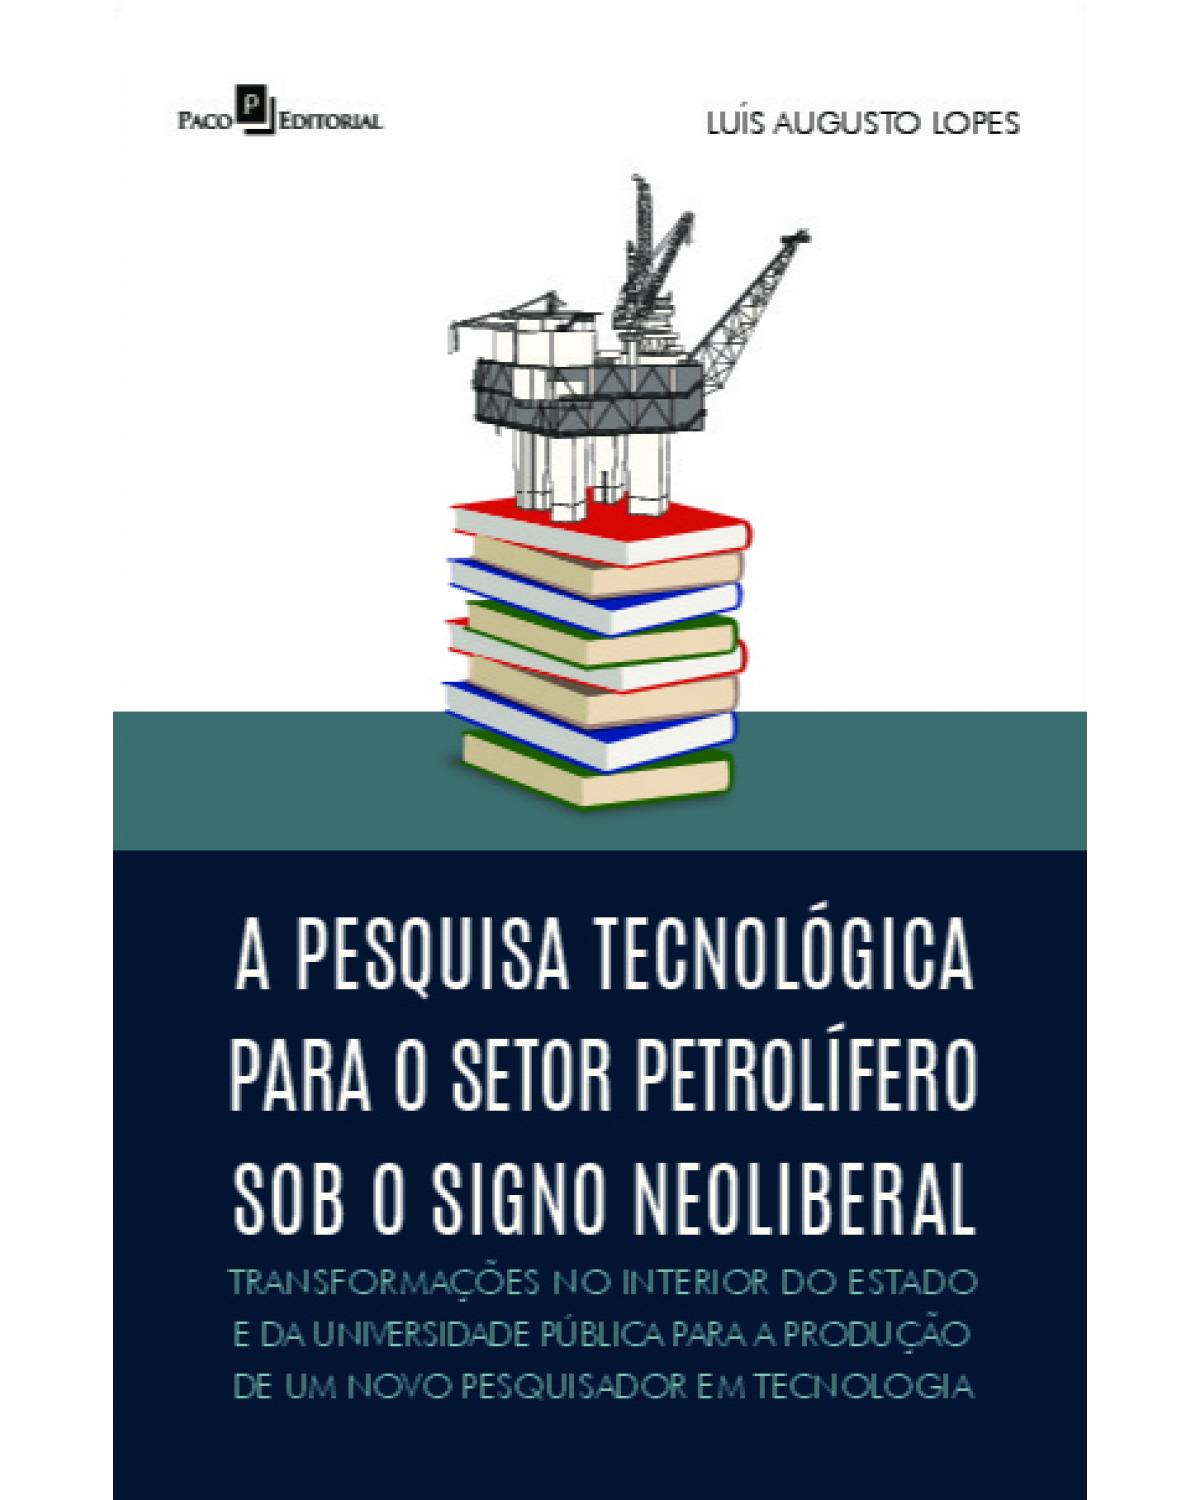 A pesquisa tecnológica para o setor petrolífero sob o signo neoliberal - transformações no interior do estado e da universidade pública para a produção de um novo pesquisador em tecnologia - 1ª Edição | 2022